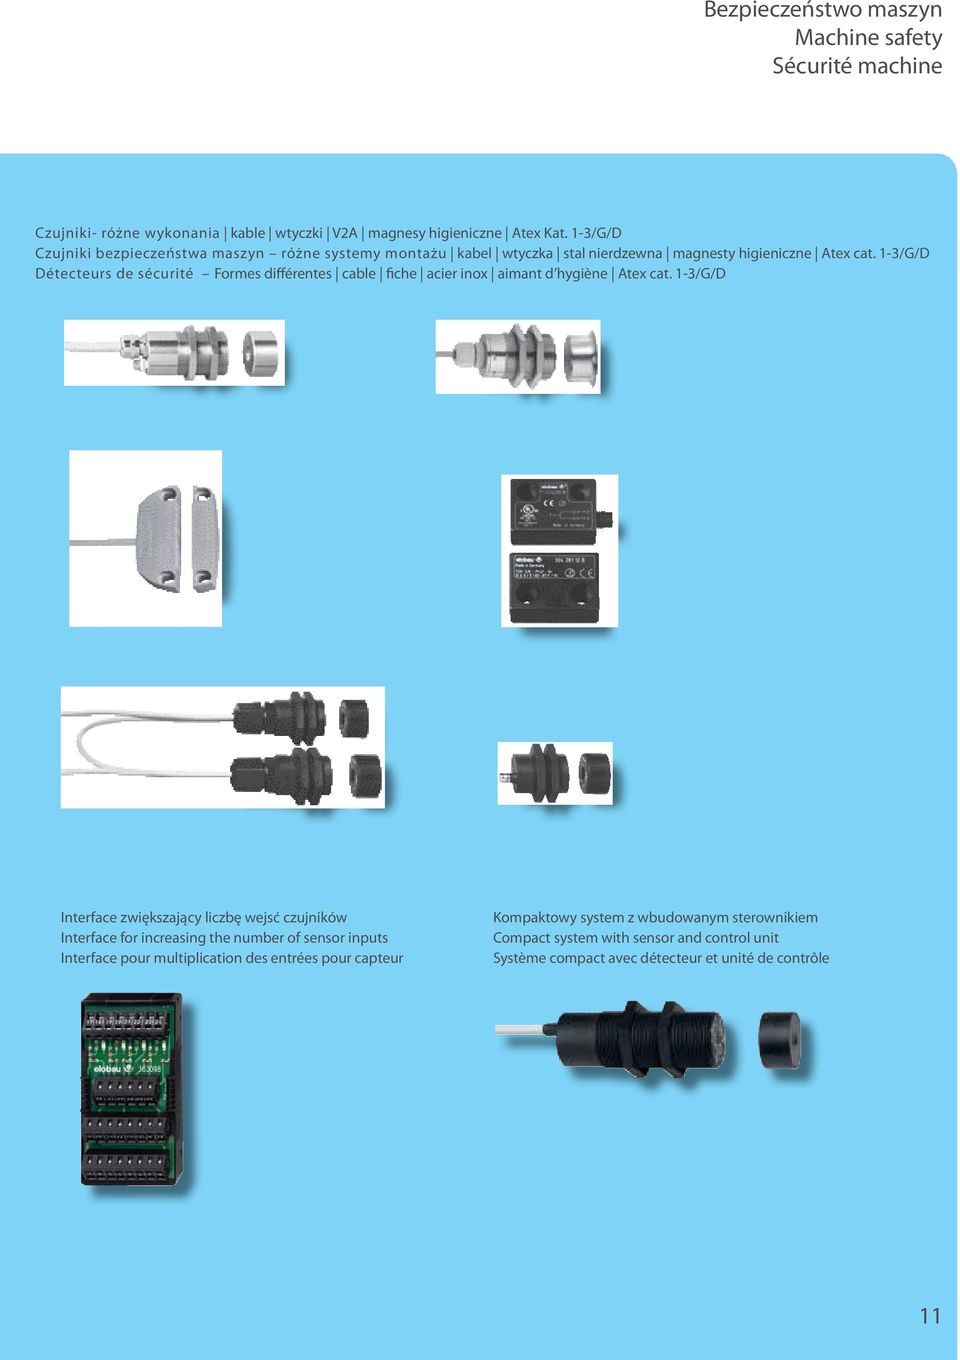 1-3/G/D Détecteurs de sécurité Formes différentes cable fiche acier inox aimant d hygiène Atex cat.